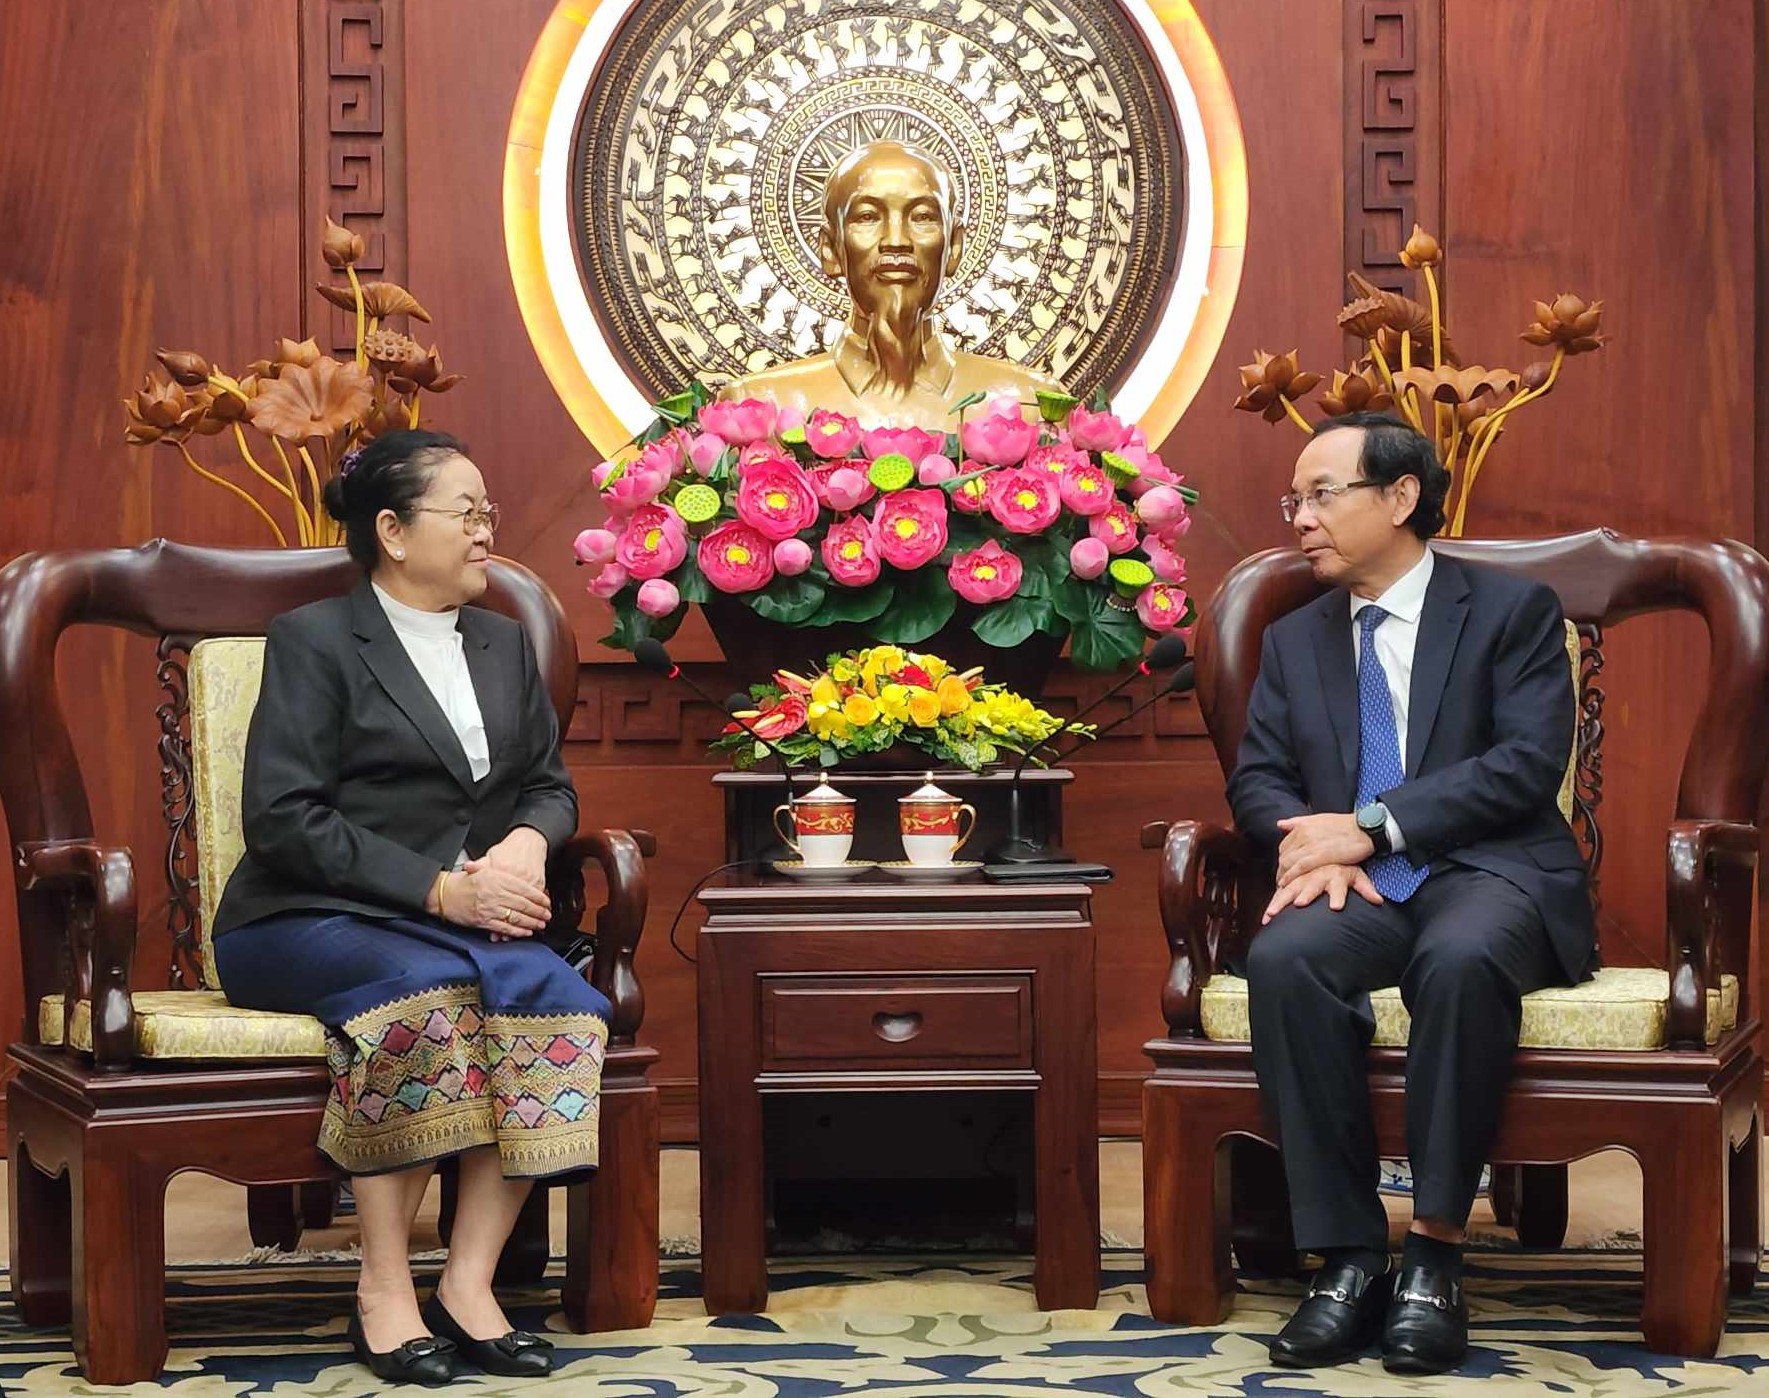 Bà Phimpha Keoximay, Tổng Lãnh sự Lào tại TPHCM đến chào từ biệt Bí thư Thành ủy Nguyễn Văn Nên, nhân dịp kết thúc nhiệm kỳ tại TPHCM.